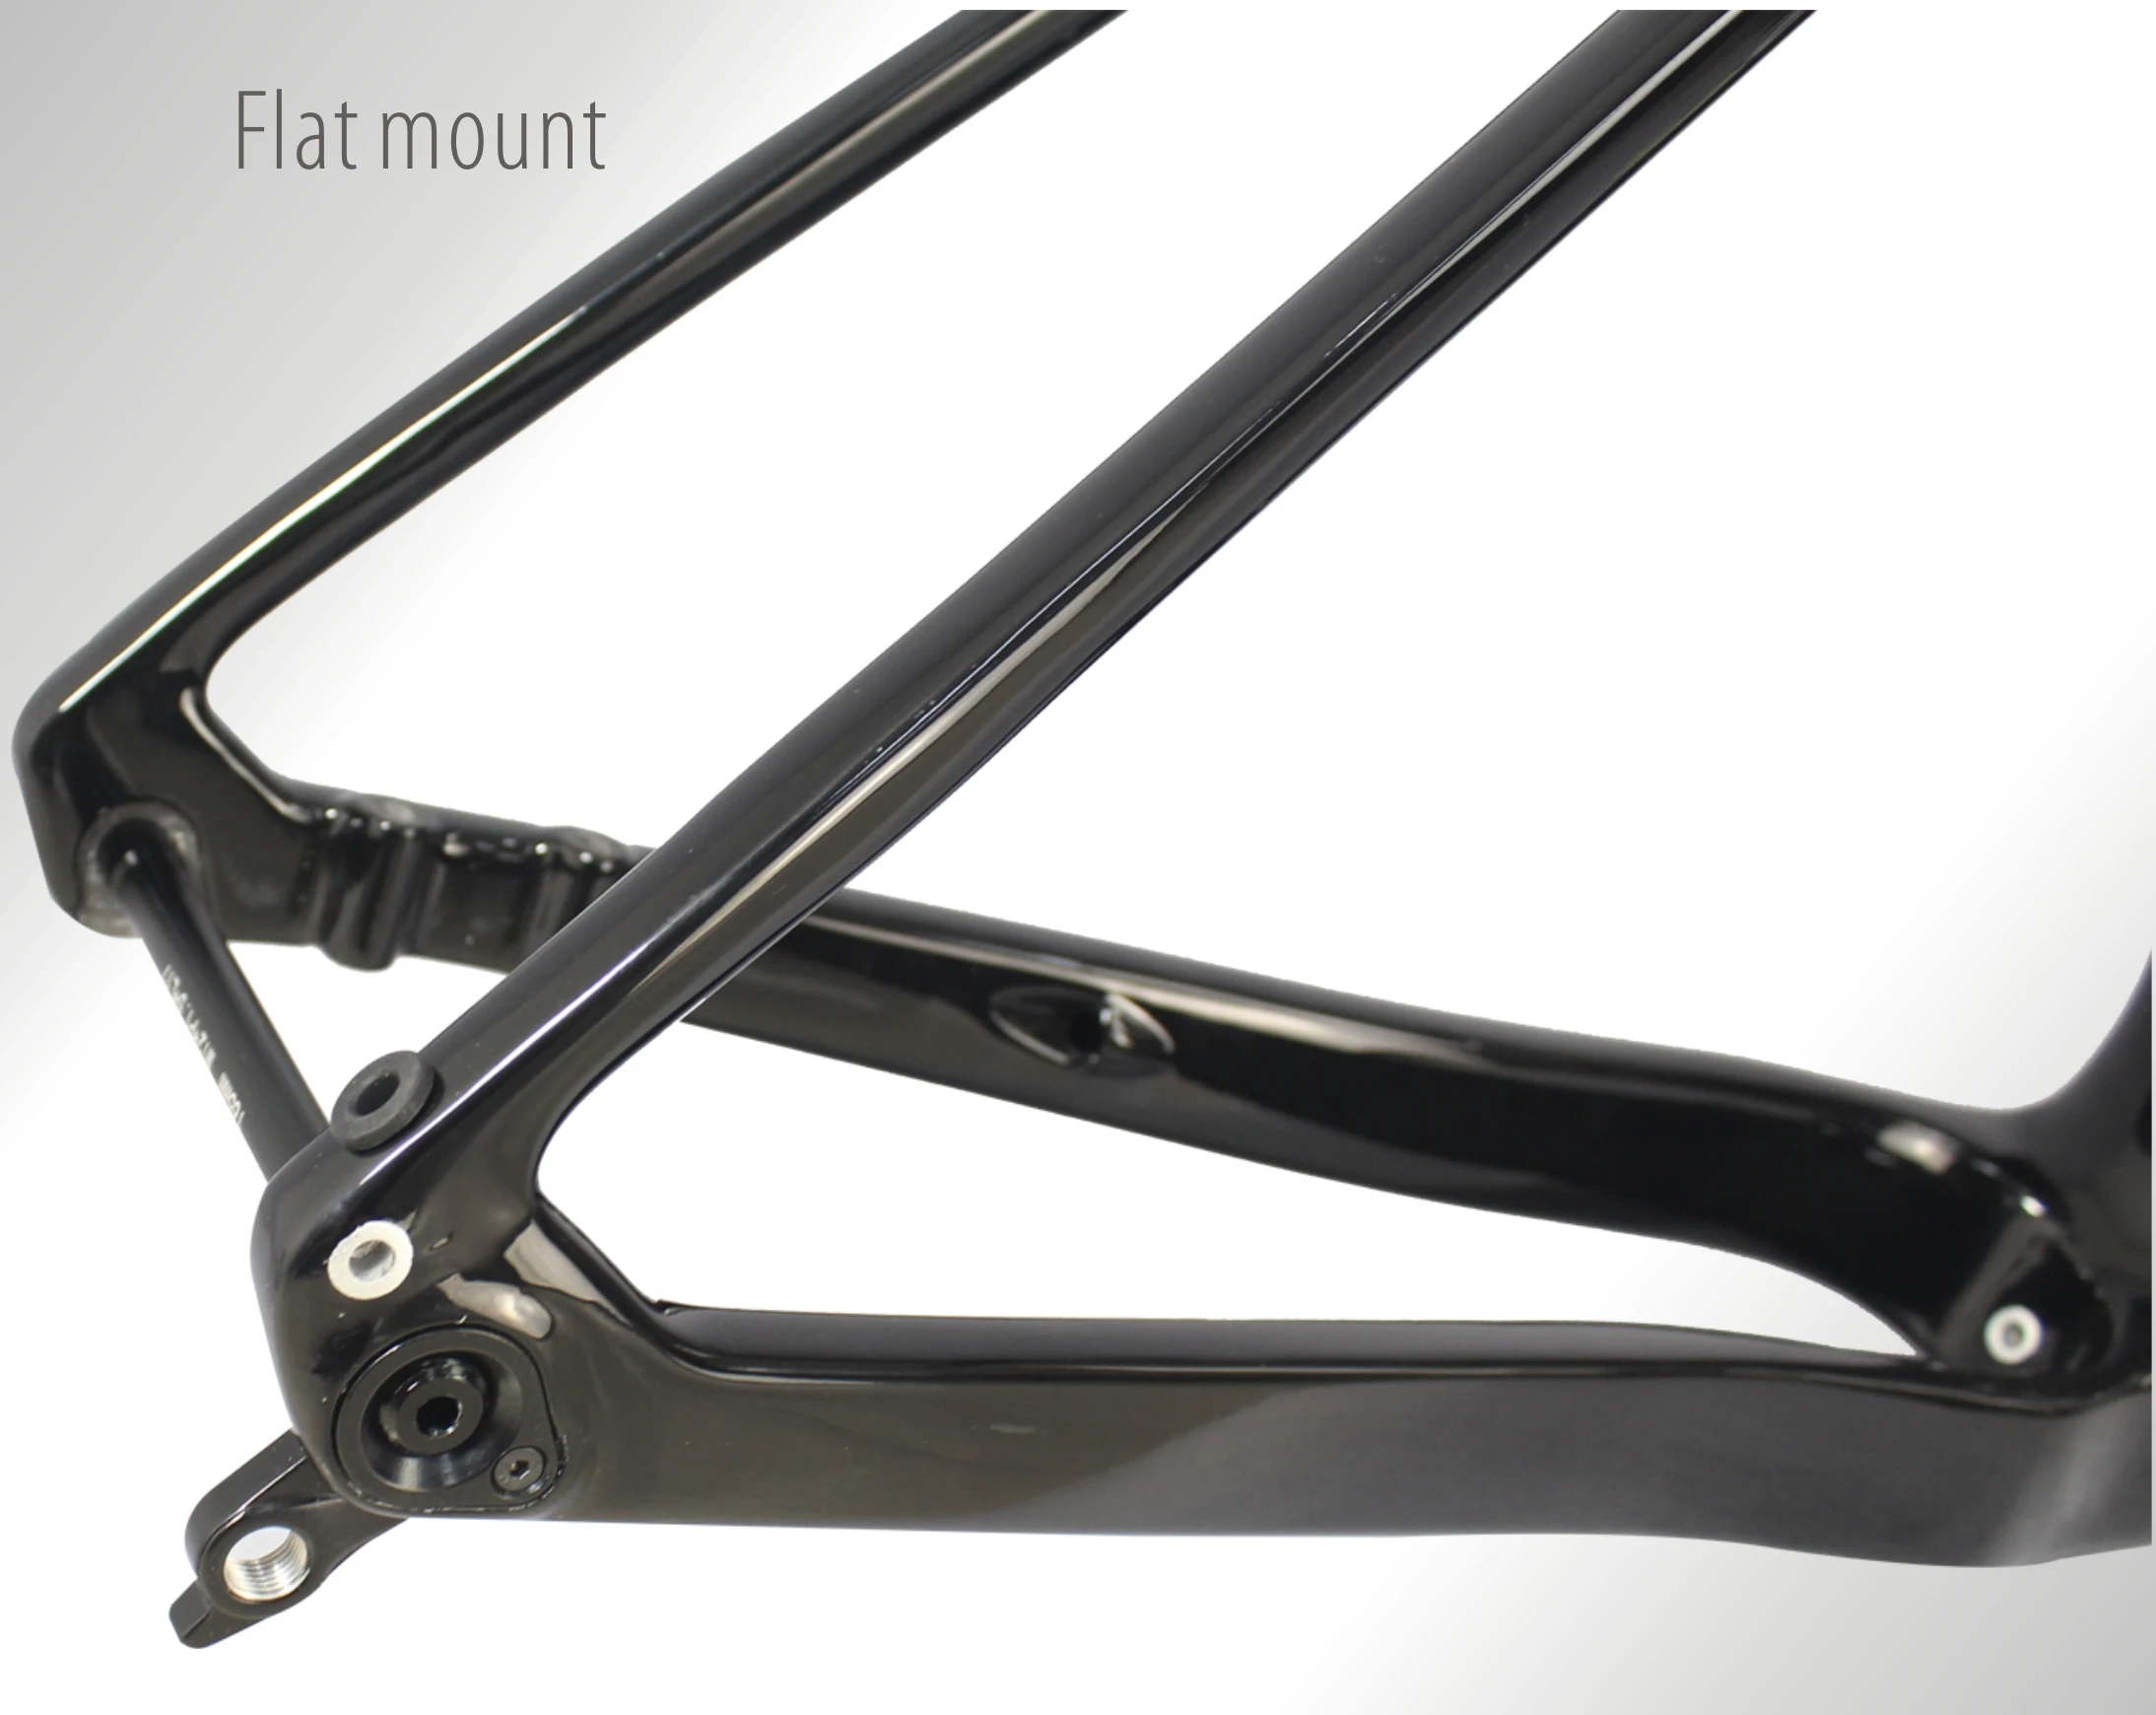 2022 New Full Hidden Cyclocross Frame T1000 Carbon Gravel Bike Frame With Aero Handlebar